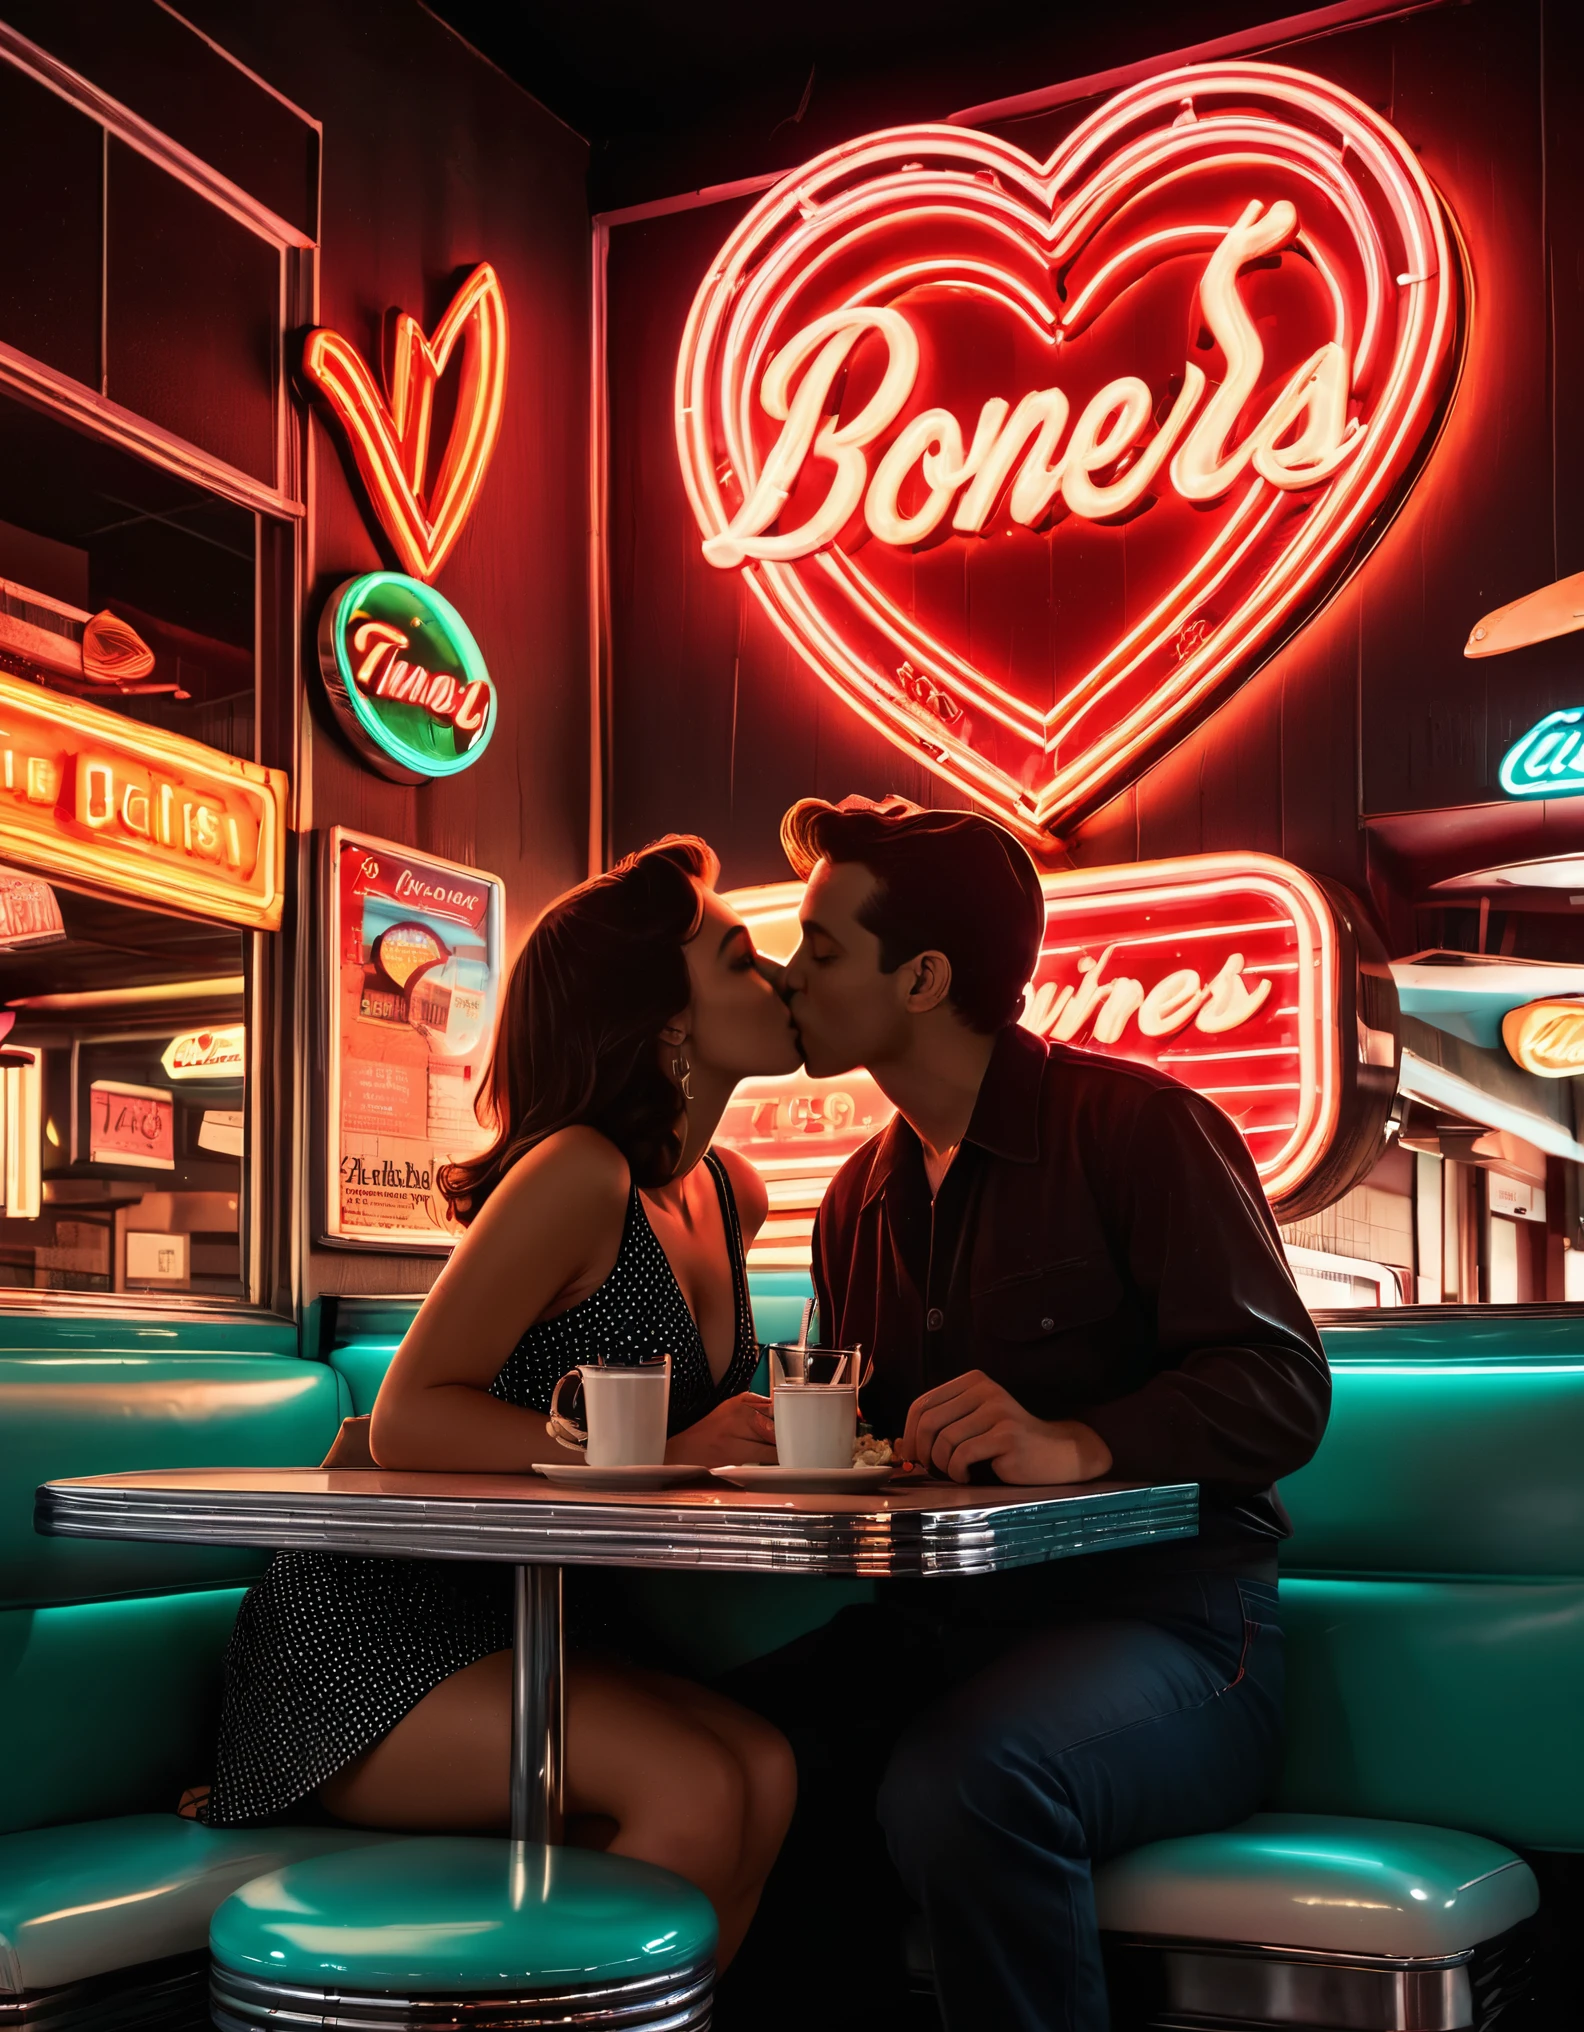 Uma obra de arte retrô em neon apresentando a silhueta de um casal se beijando em uma lanchonete, com letreiros de néon e formas de coração ao fundo, evocando uma vibração nostálgica dos anos 1950